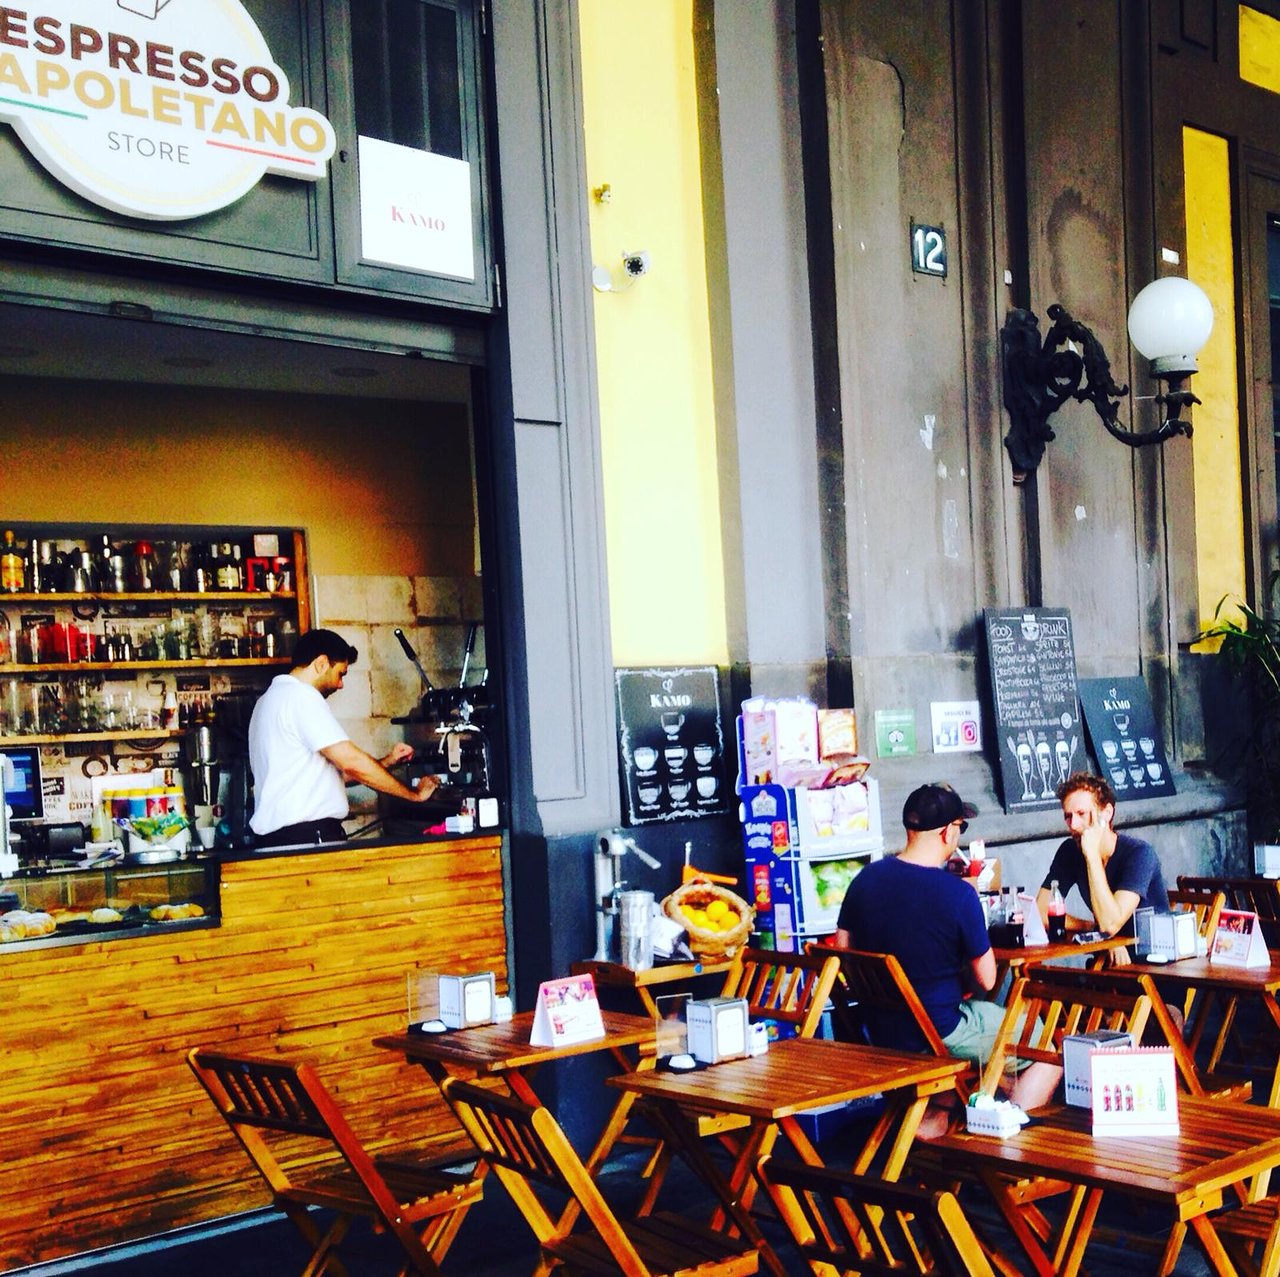 Espresso Napoletano Store, Napoli